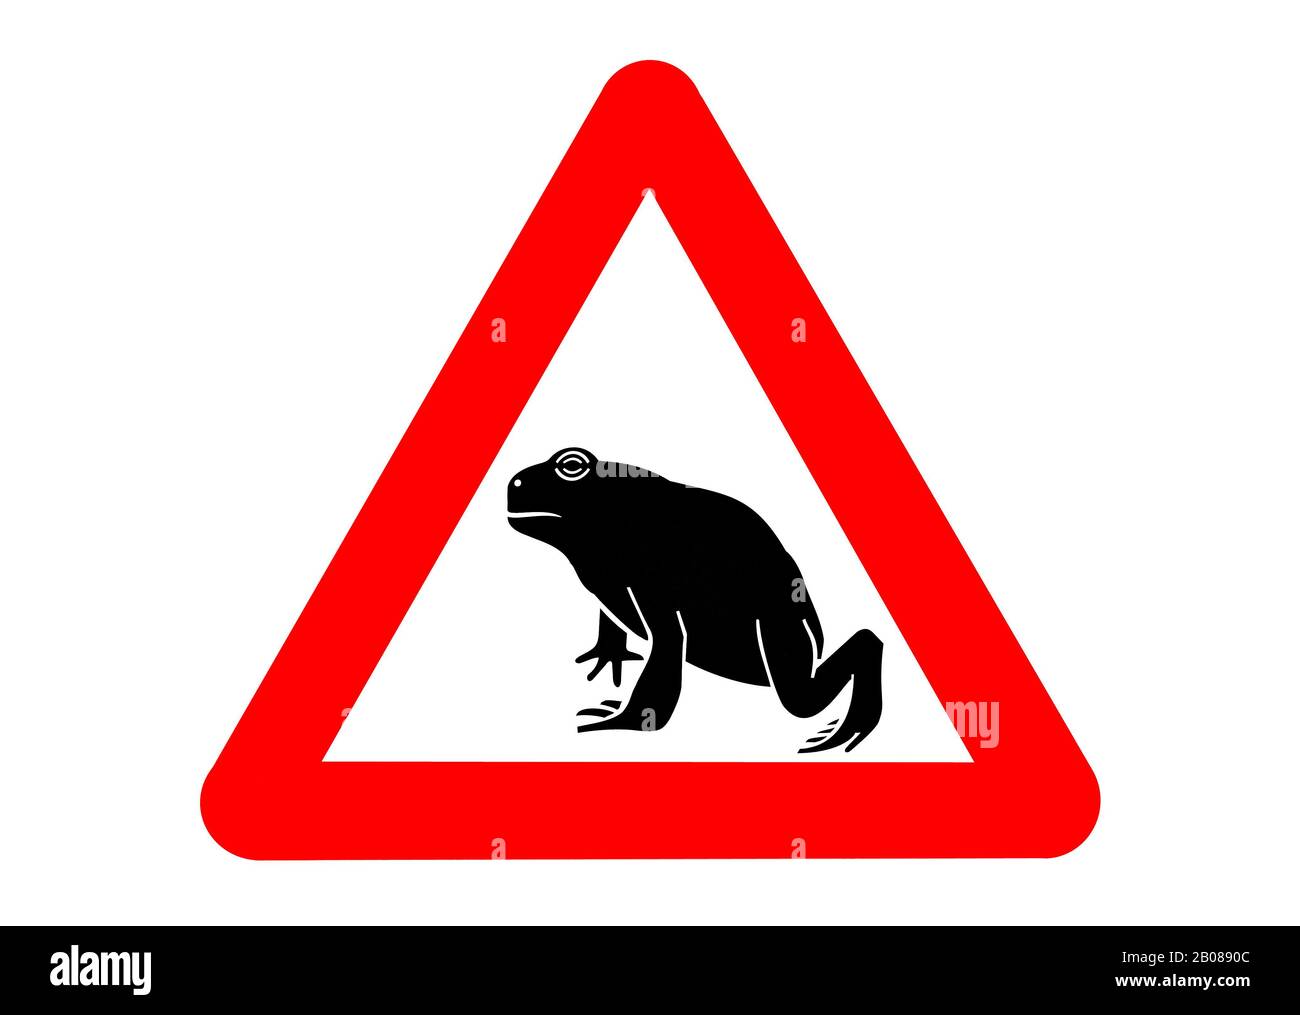 Signe d'avertissement pour la migration des amphibiens / crapauds traversant la route pendant la migration annuelle au printemps contre fond blanc Banque D'Images